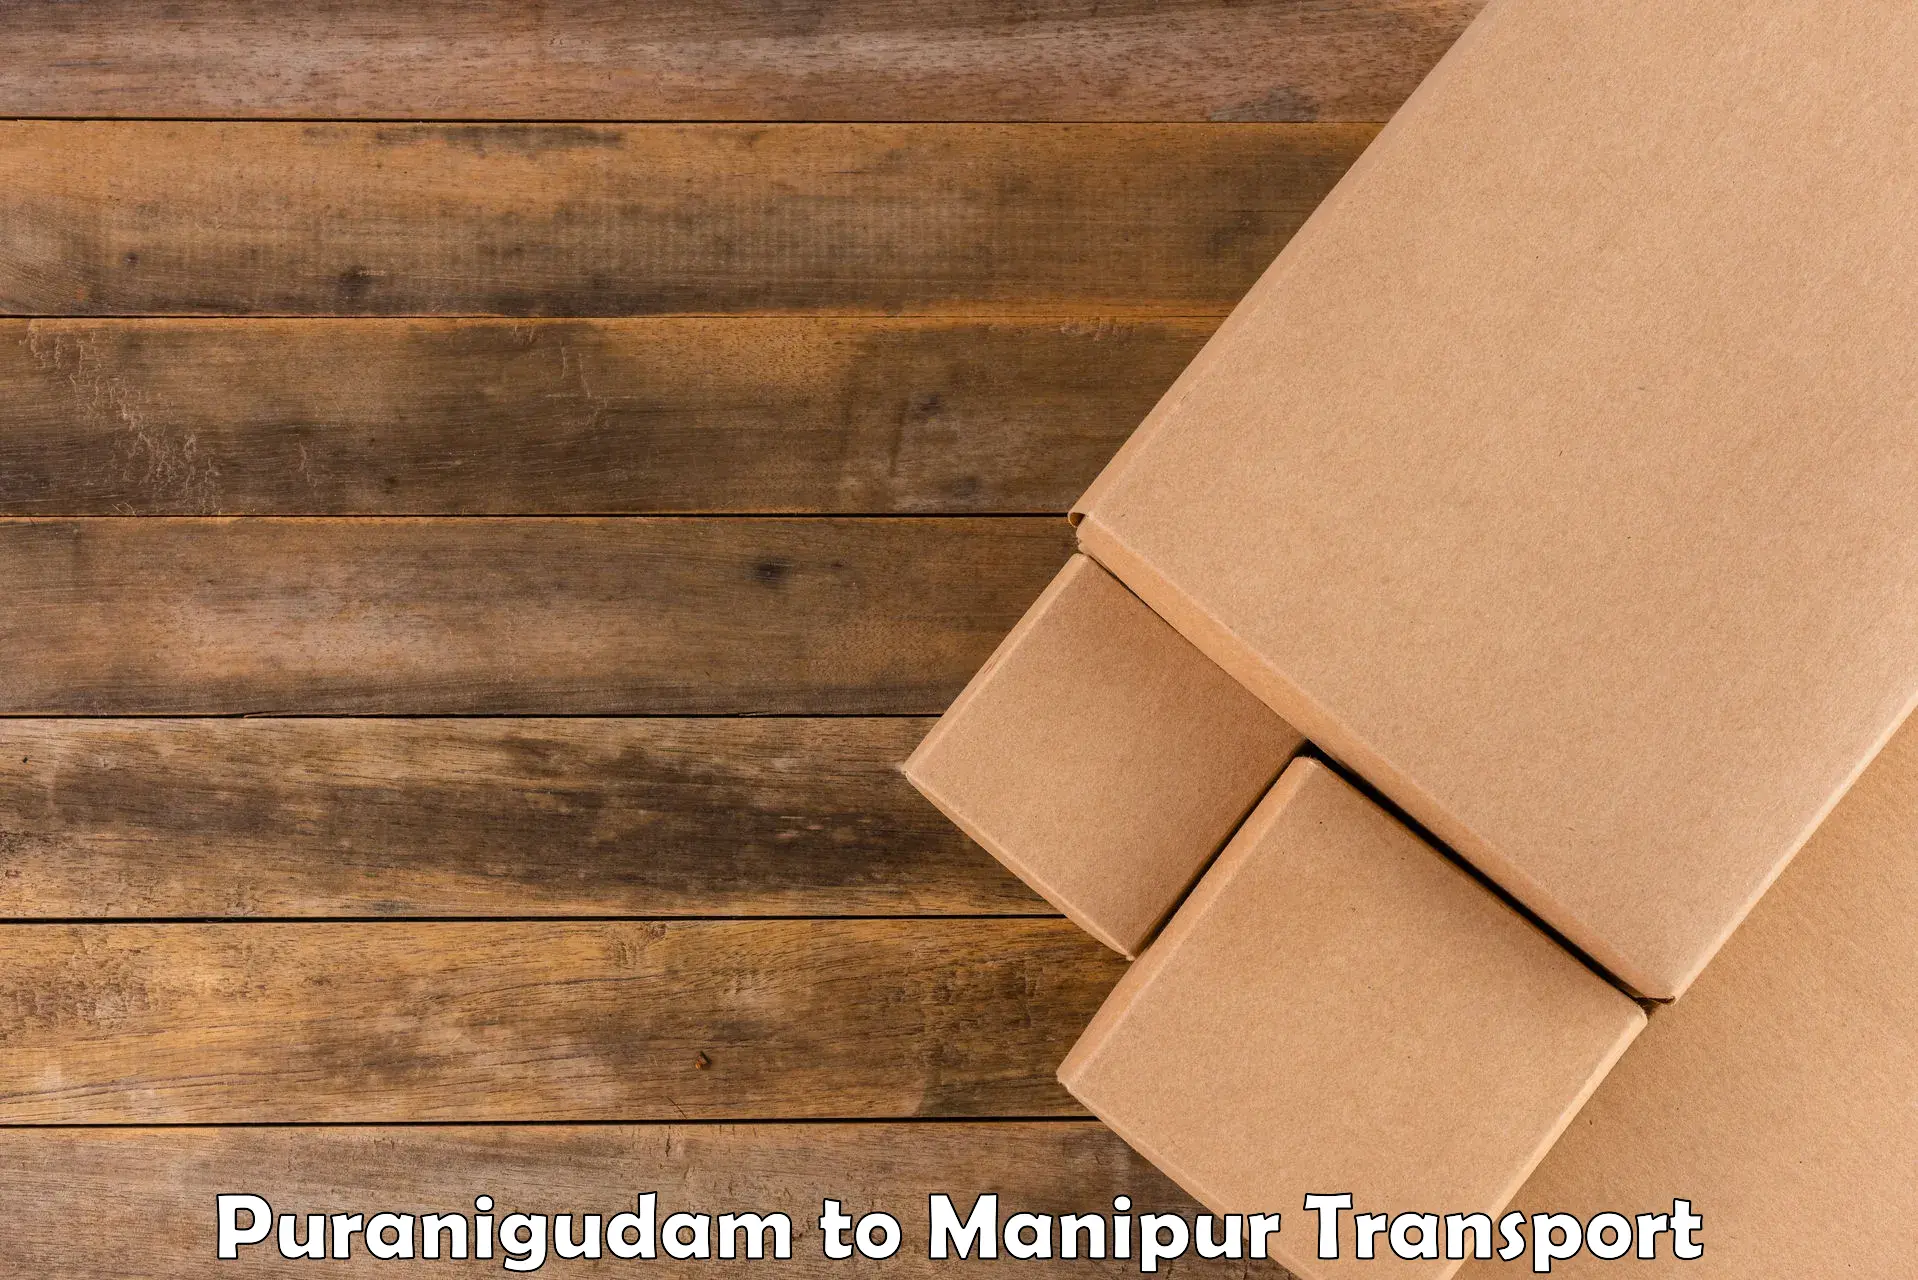 Container transportation services Puranigudam to IIIT Senapati